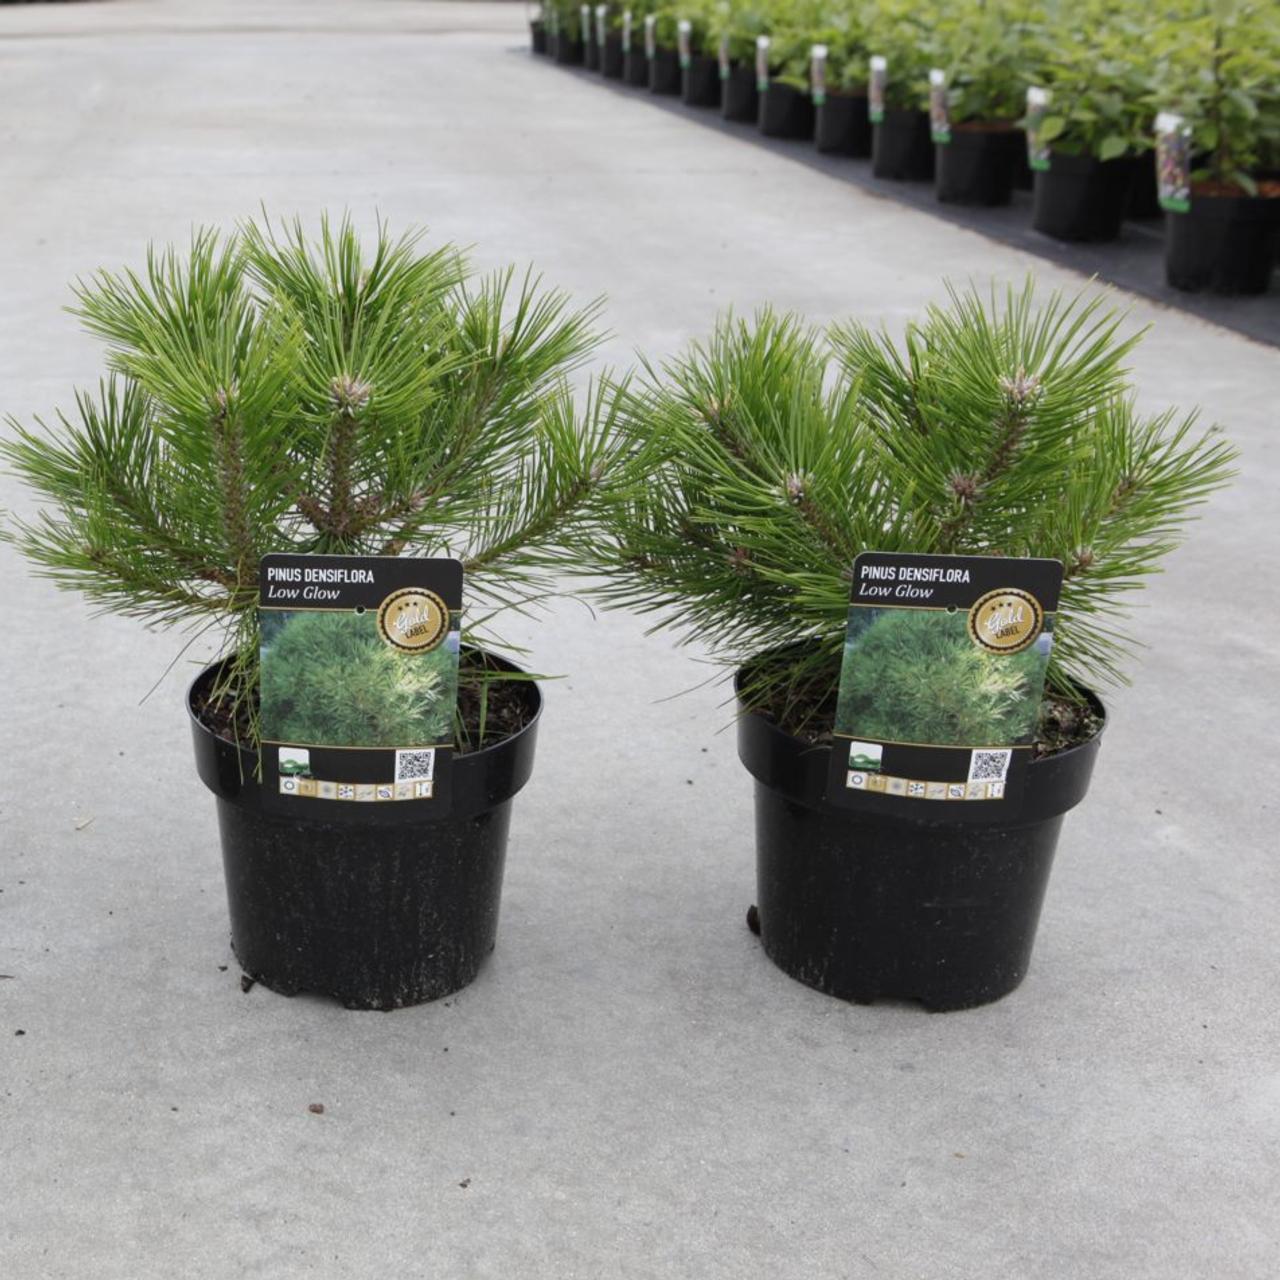 Pinus densiflora 'Low Glow' plant